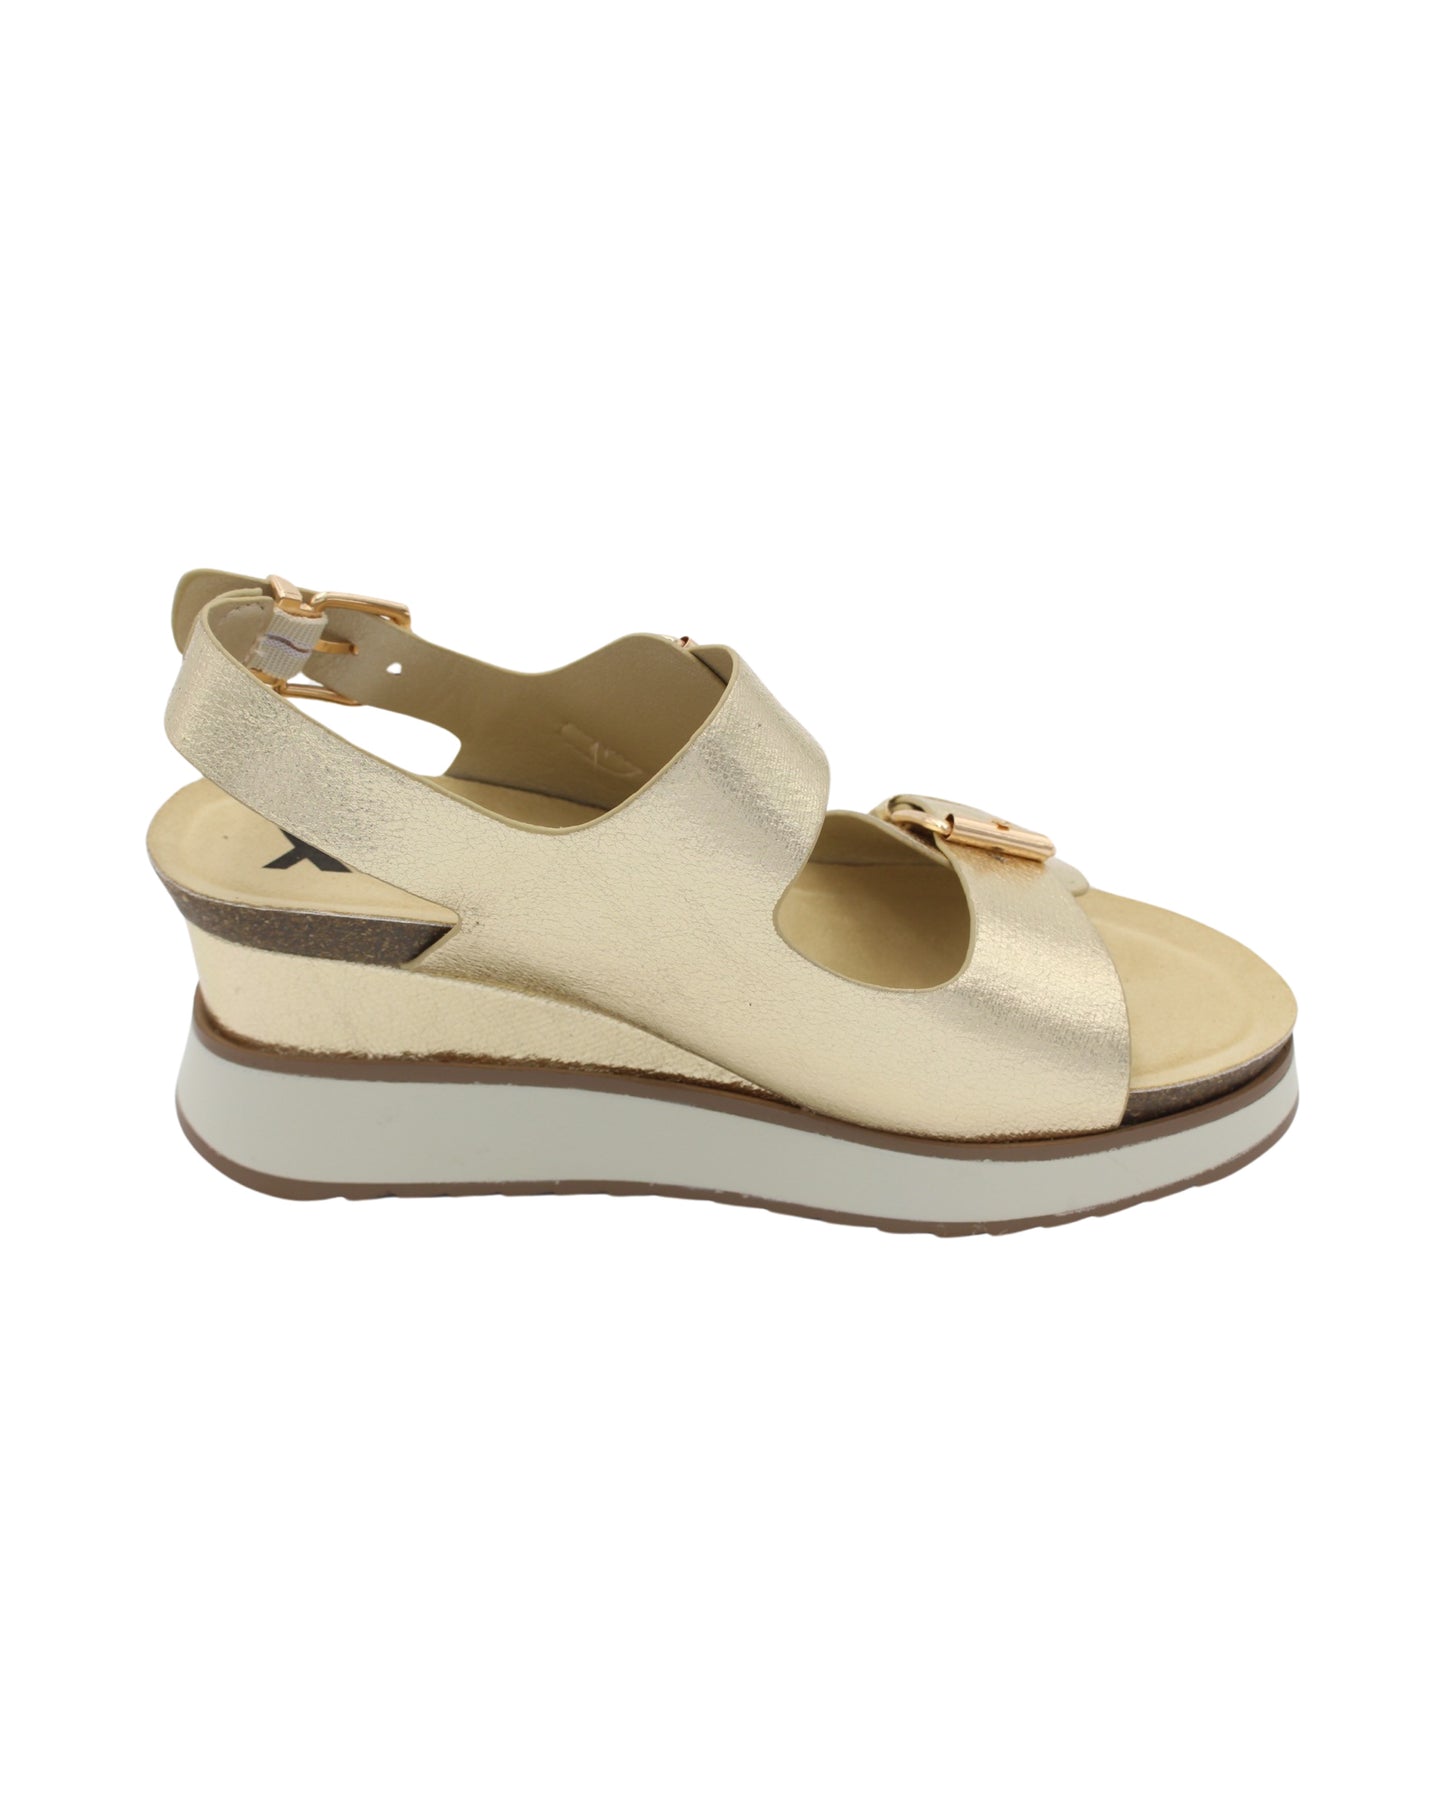 Xti - Ladies Shoes Sandals Gold (2419)